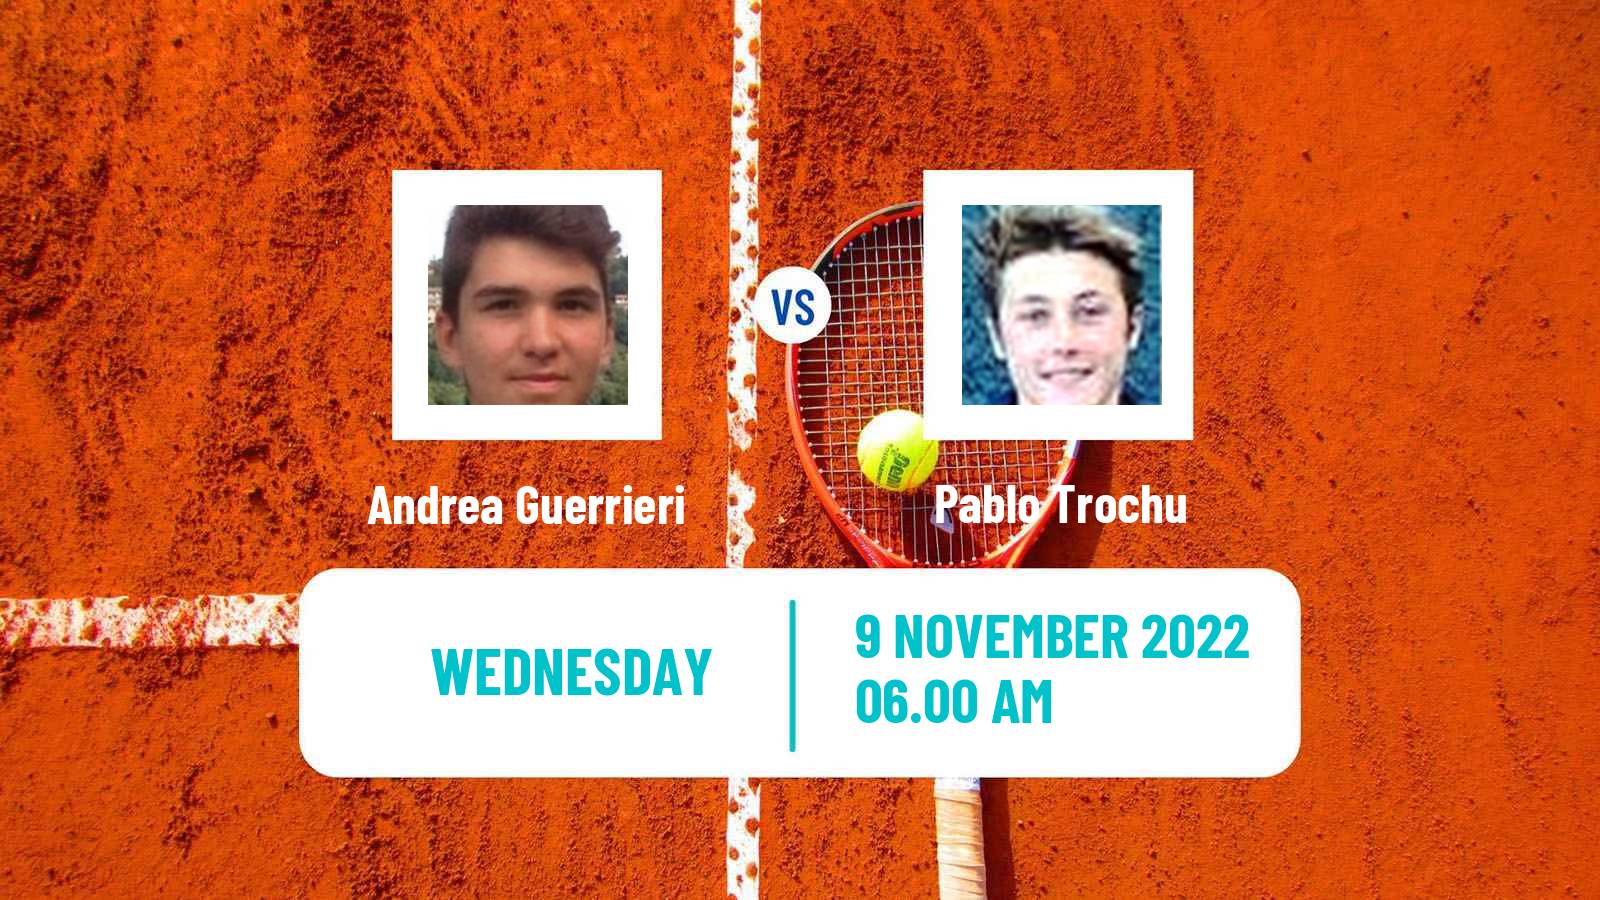 Tennis ITF Tournaments Andrea Guerrieri - Pablo Trochu